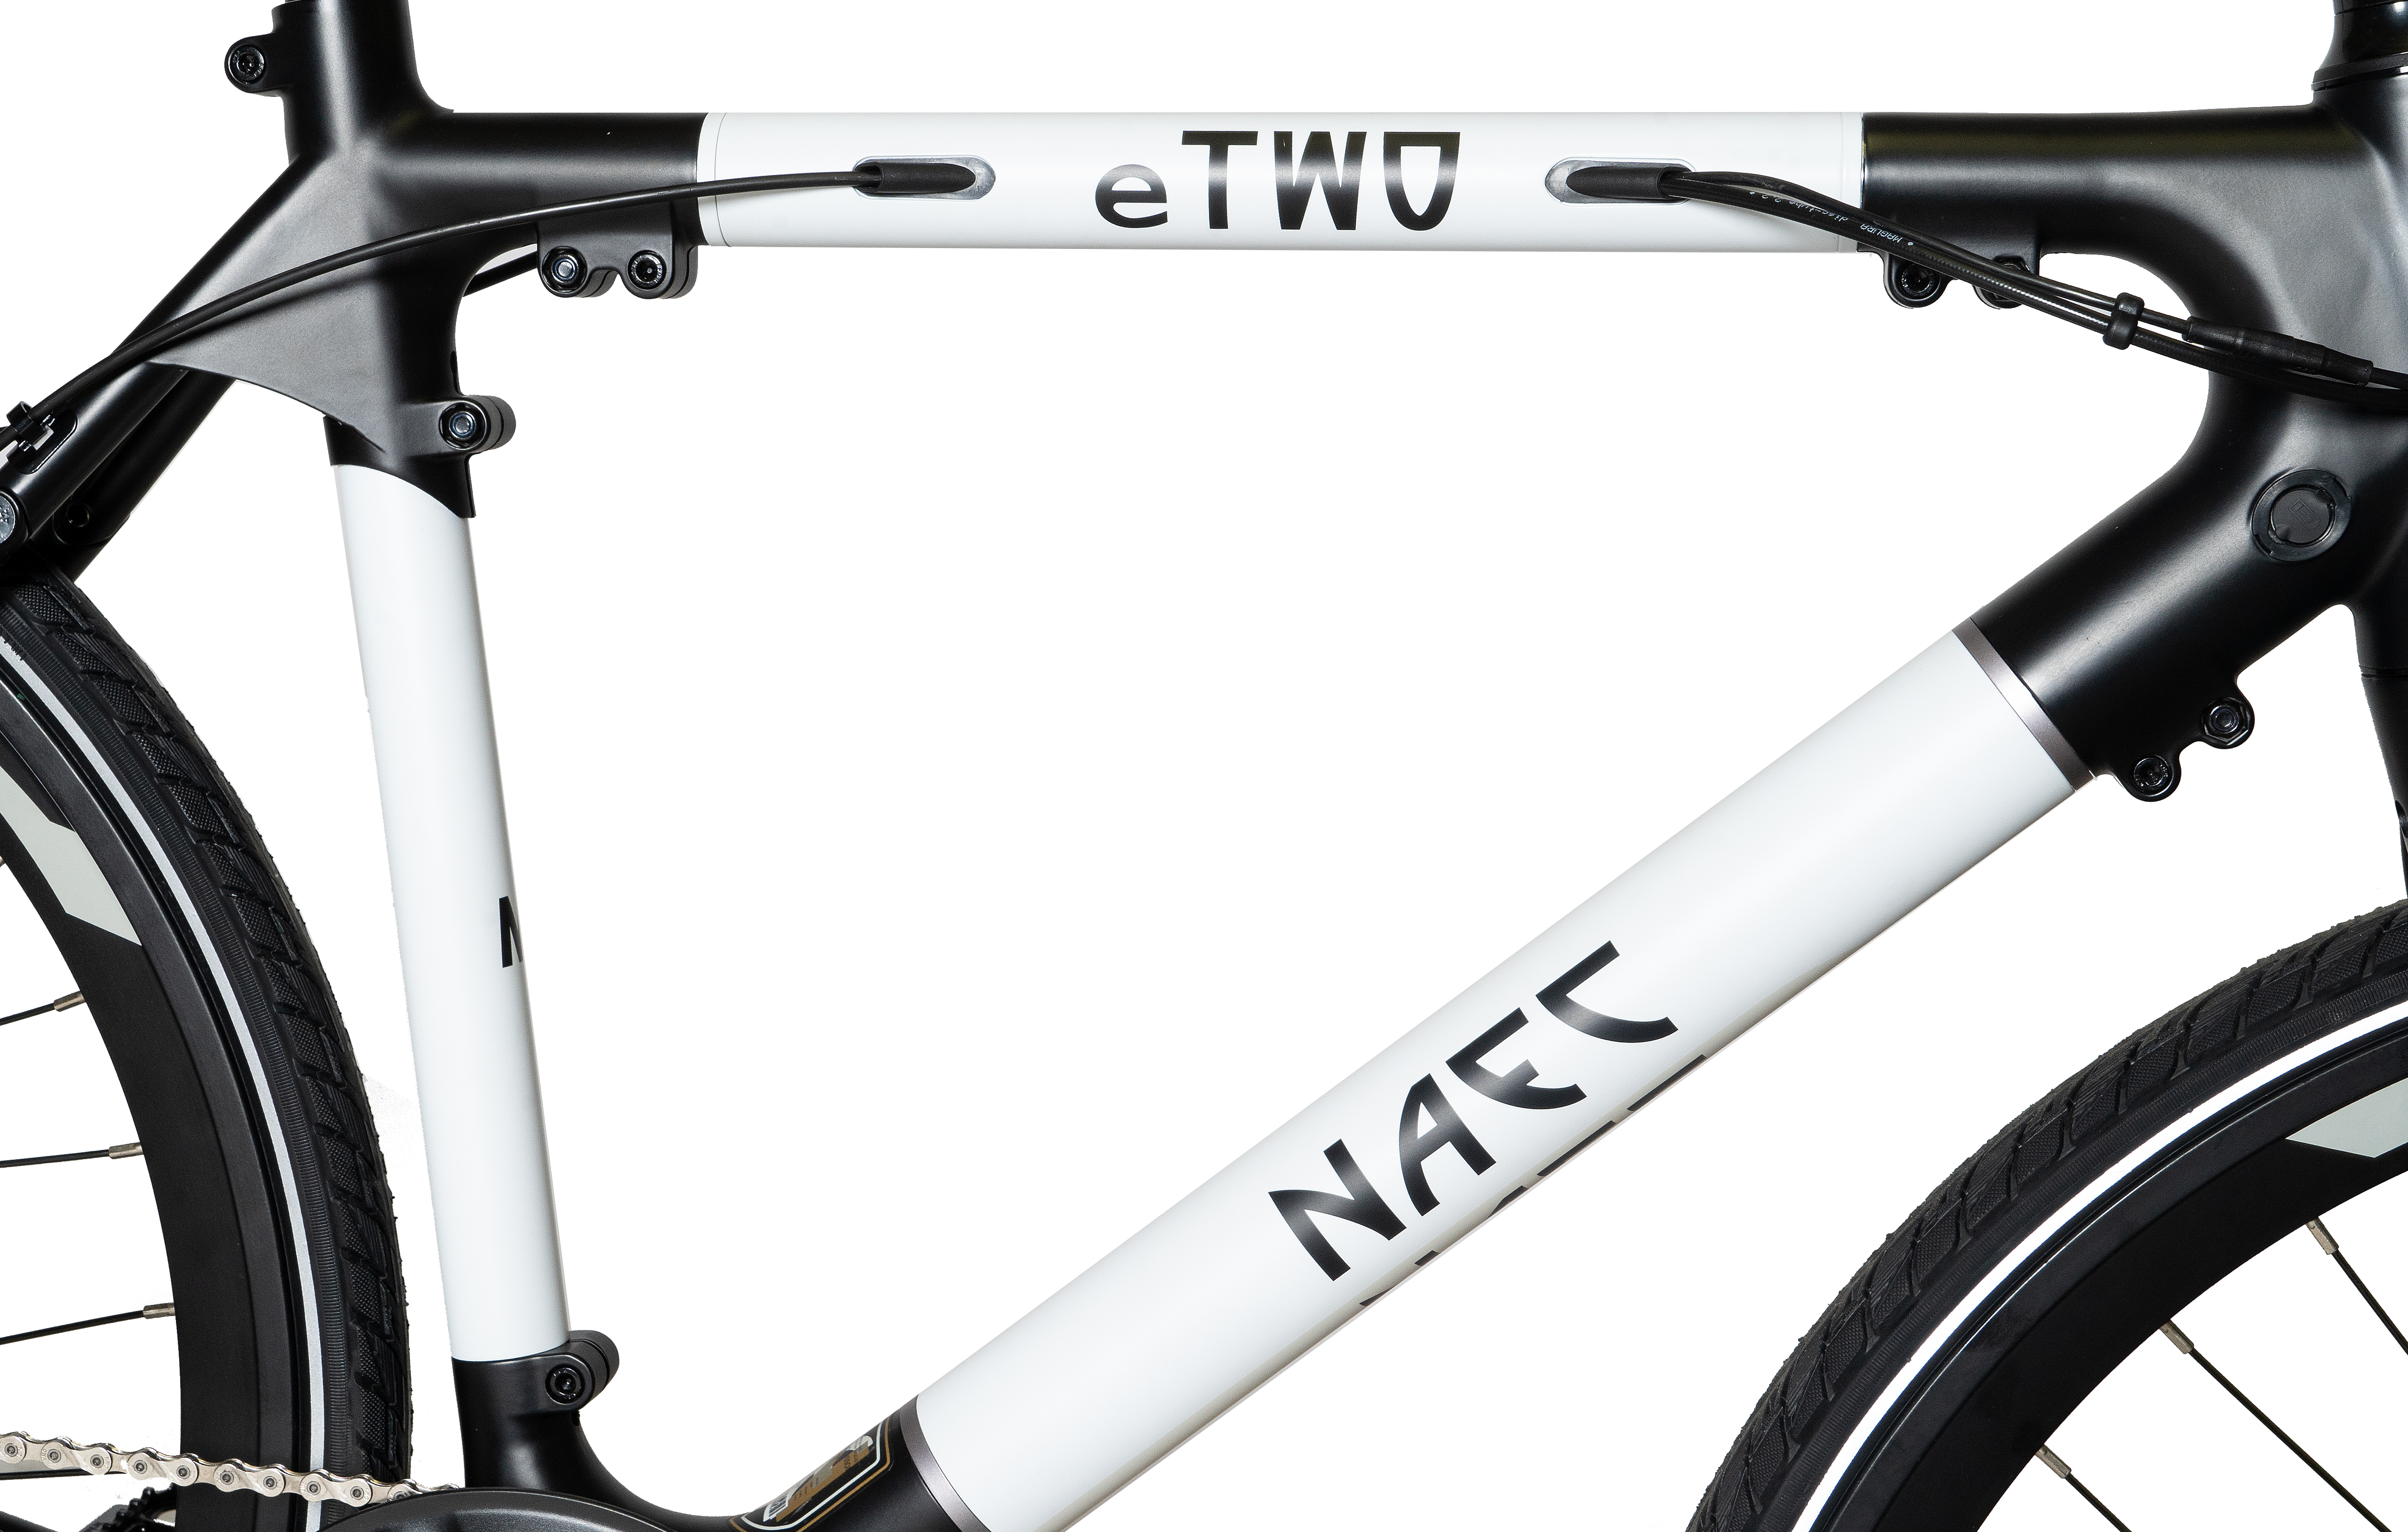 NAEC 28 Zoll eTWO Kettenantrieb (Laufradgröße: weiß) schwarz weiss Citybike Modular schwarz Unisex-Rad, Rahmenhöhe: Zoll, 28 280, 53 cm